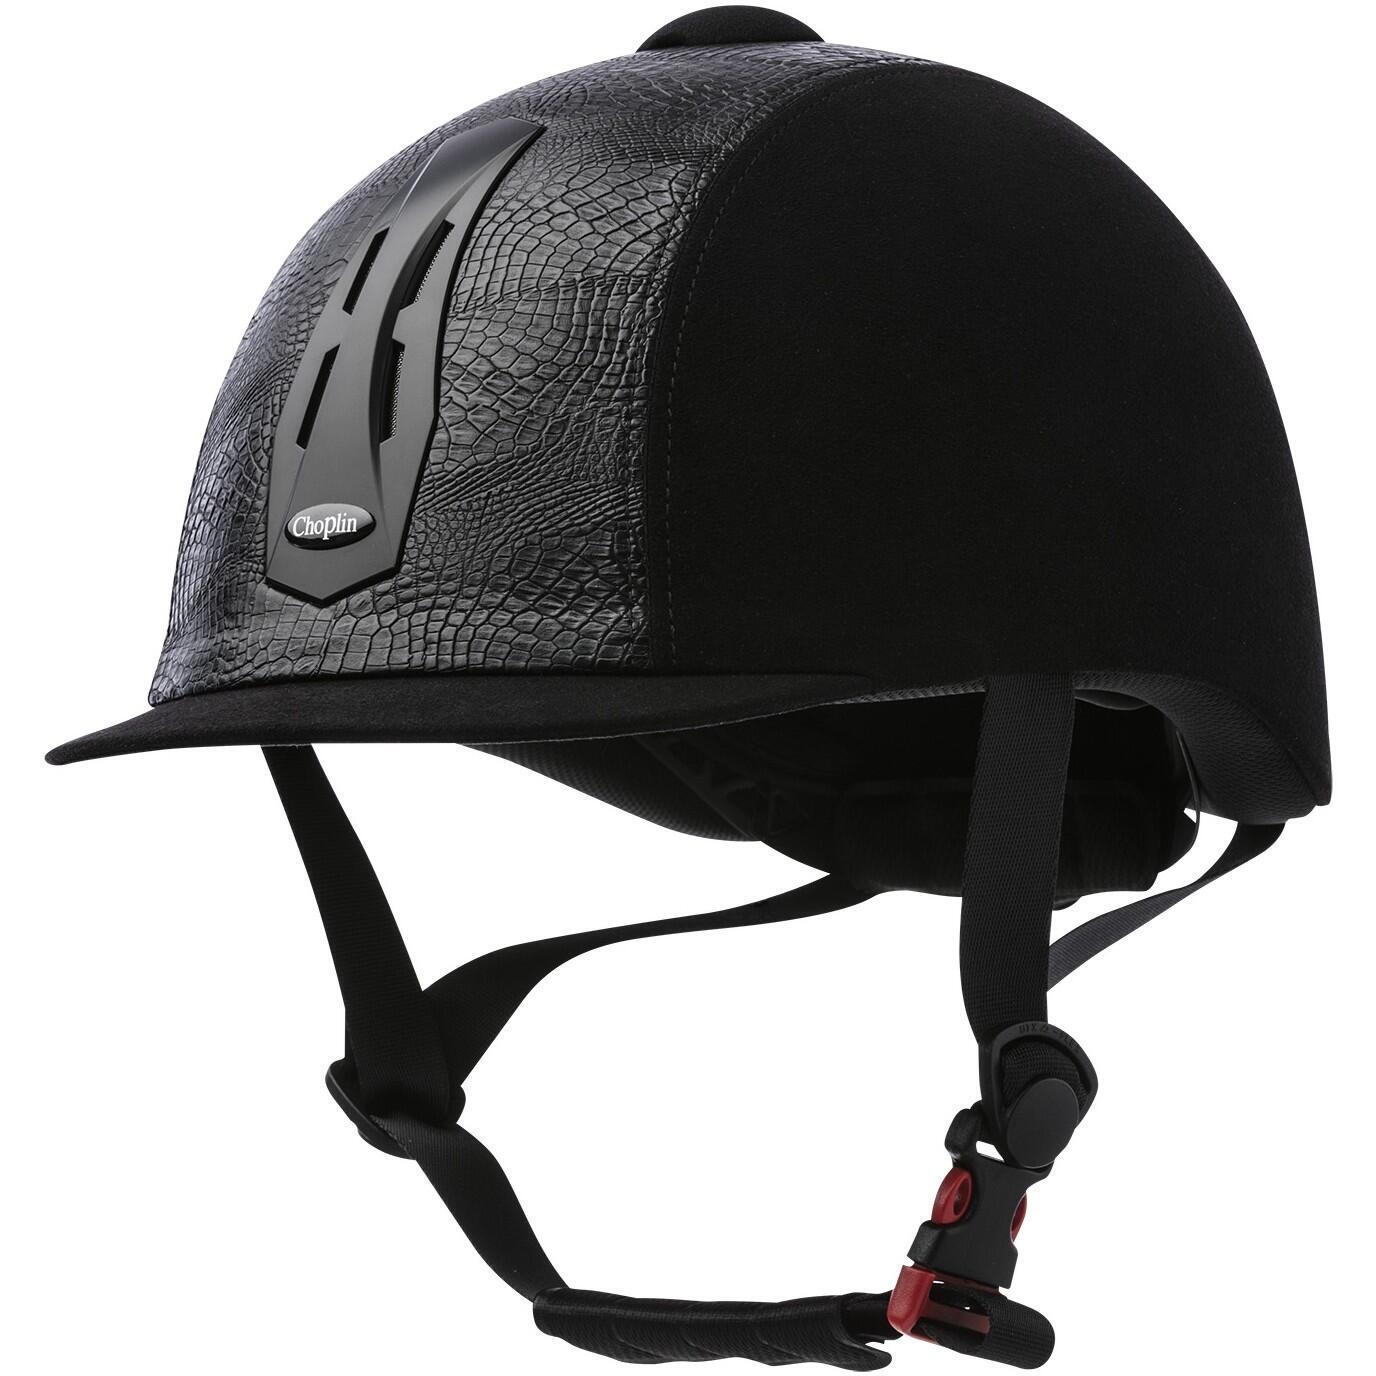 Шлем Choplin Premium для верховой езды, черный шлем для верховой езды младшего возраста классический британский защитный шлем с бриллиантами бархатный дышащий шлем